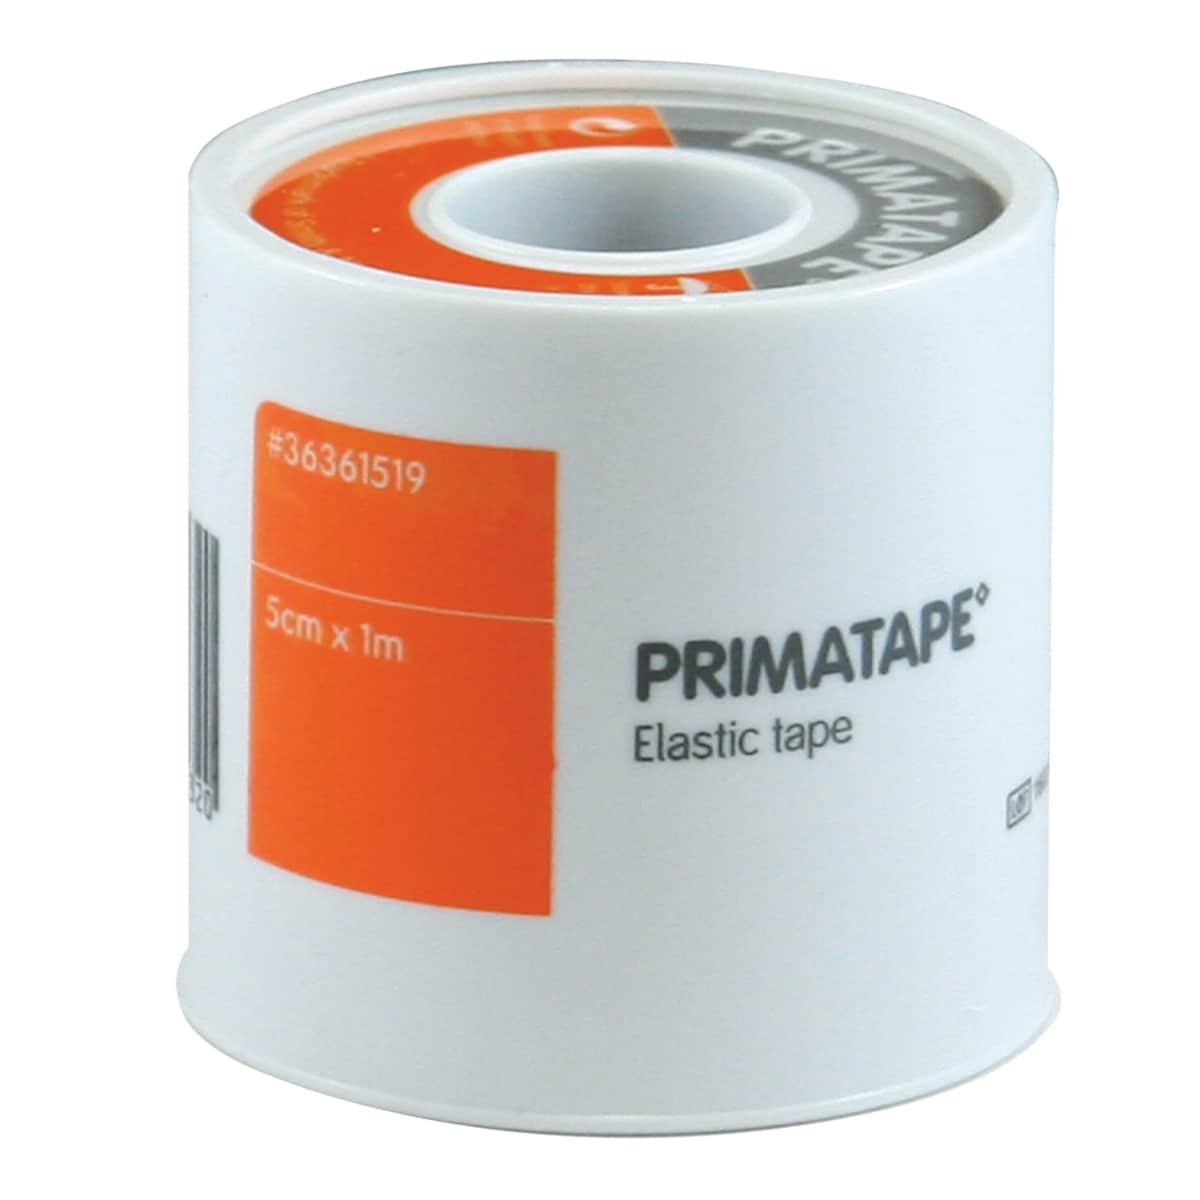 Primatape Elastic Tape 5cm x 1m by Smith & Nephew